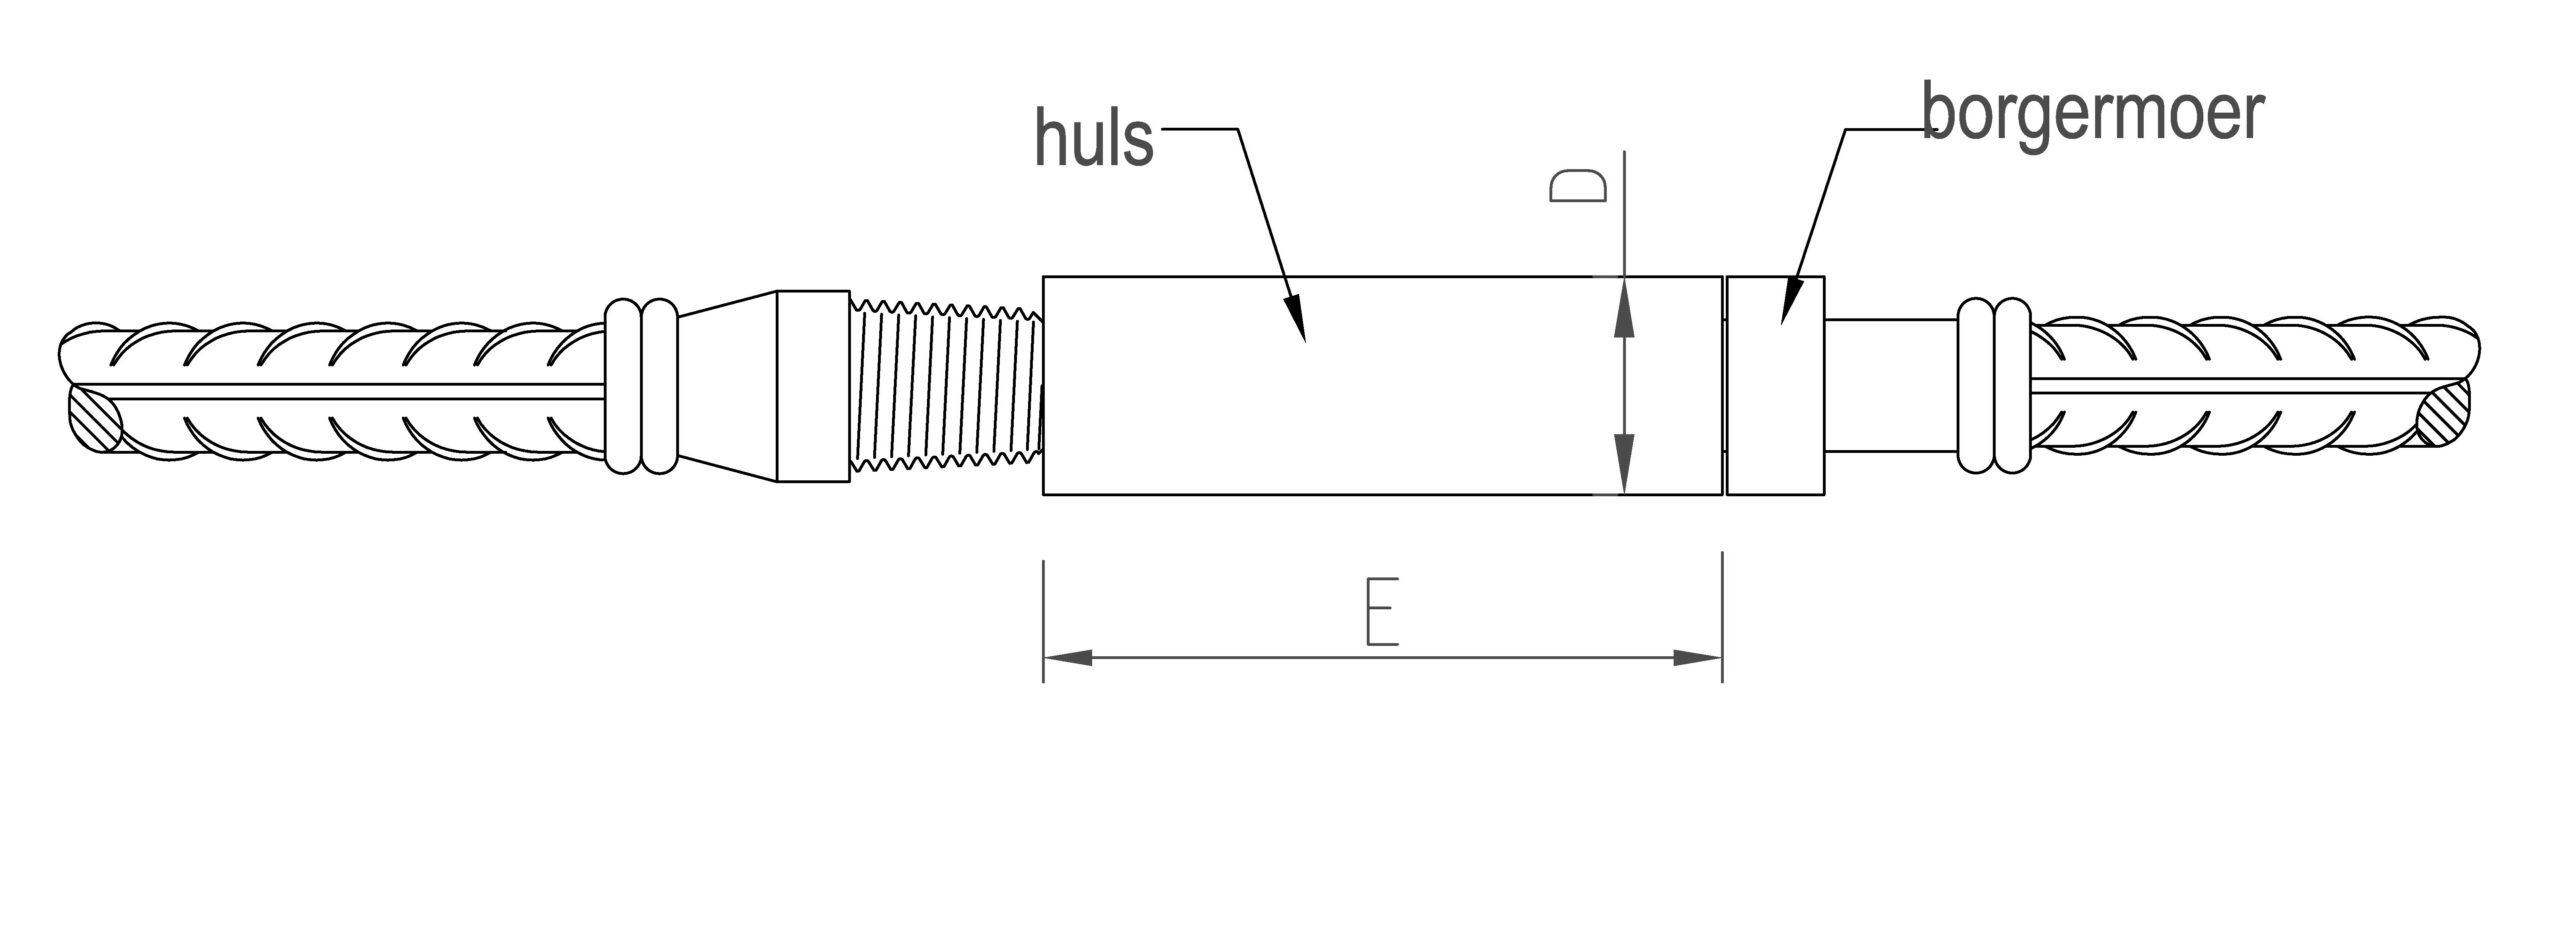 illustratie installatie HRC490 positie koppeling - stap 1